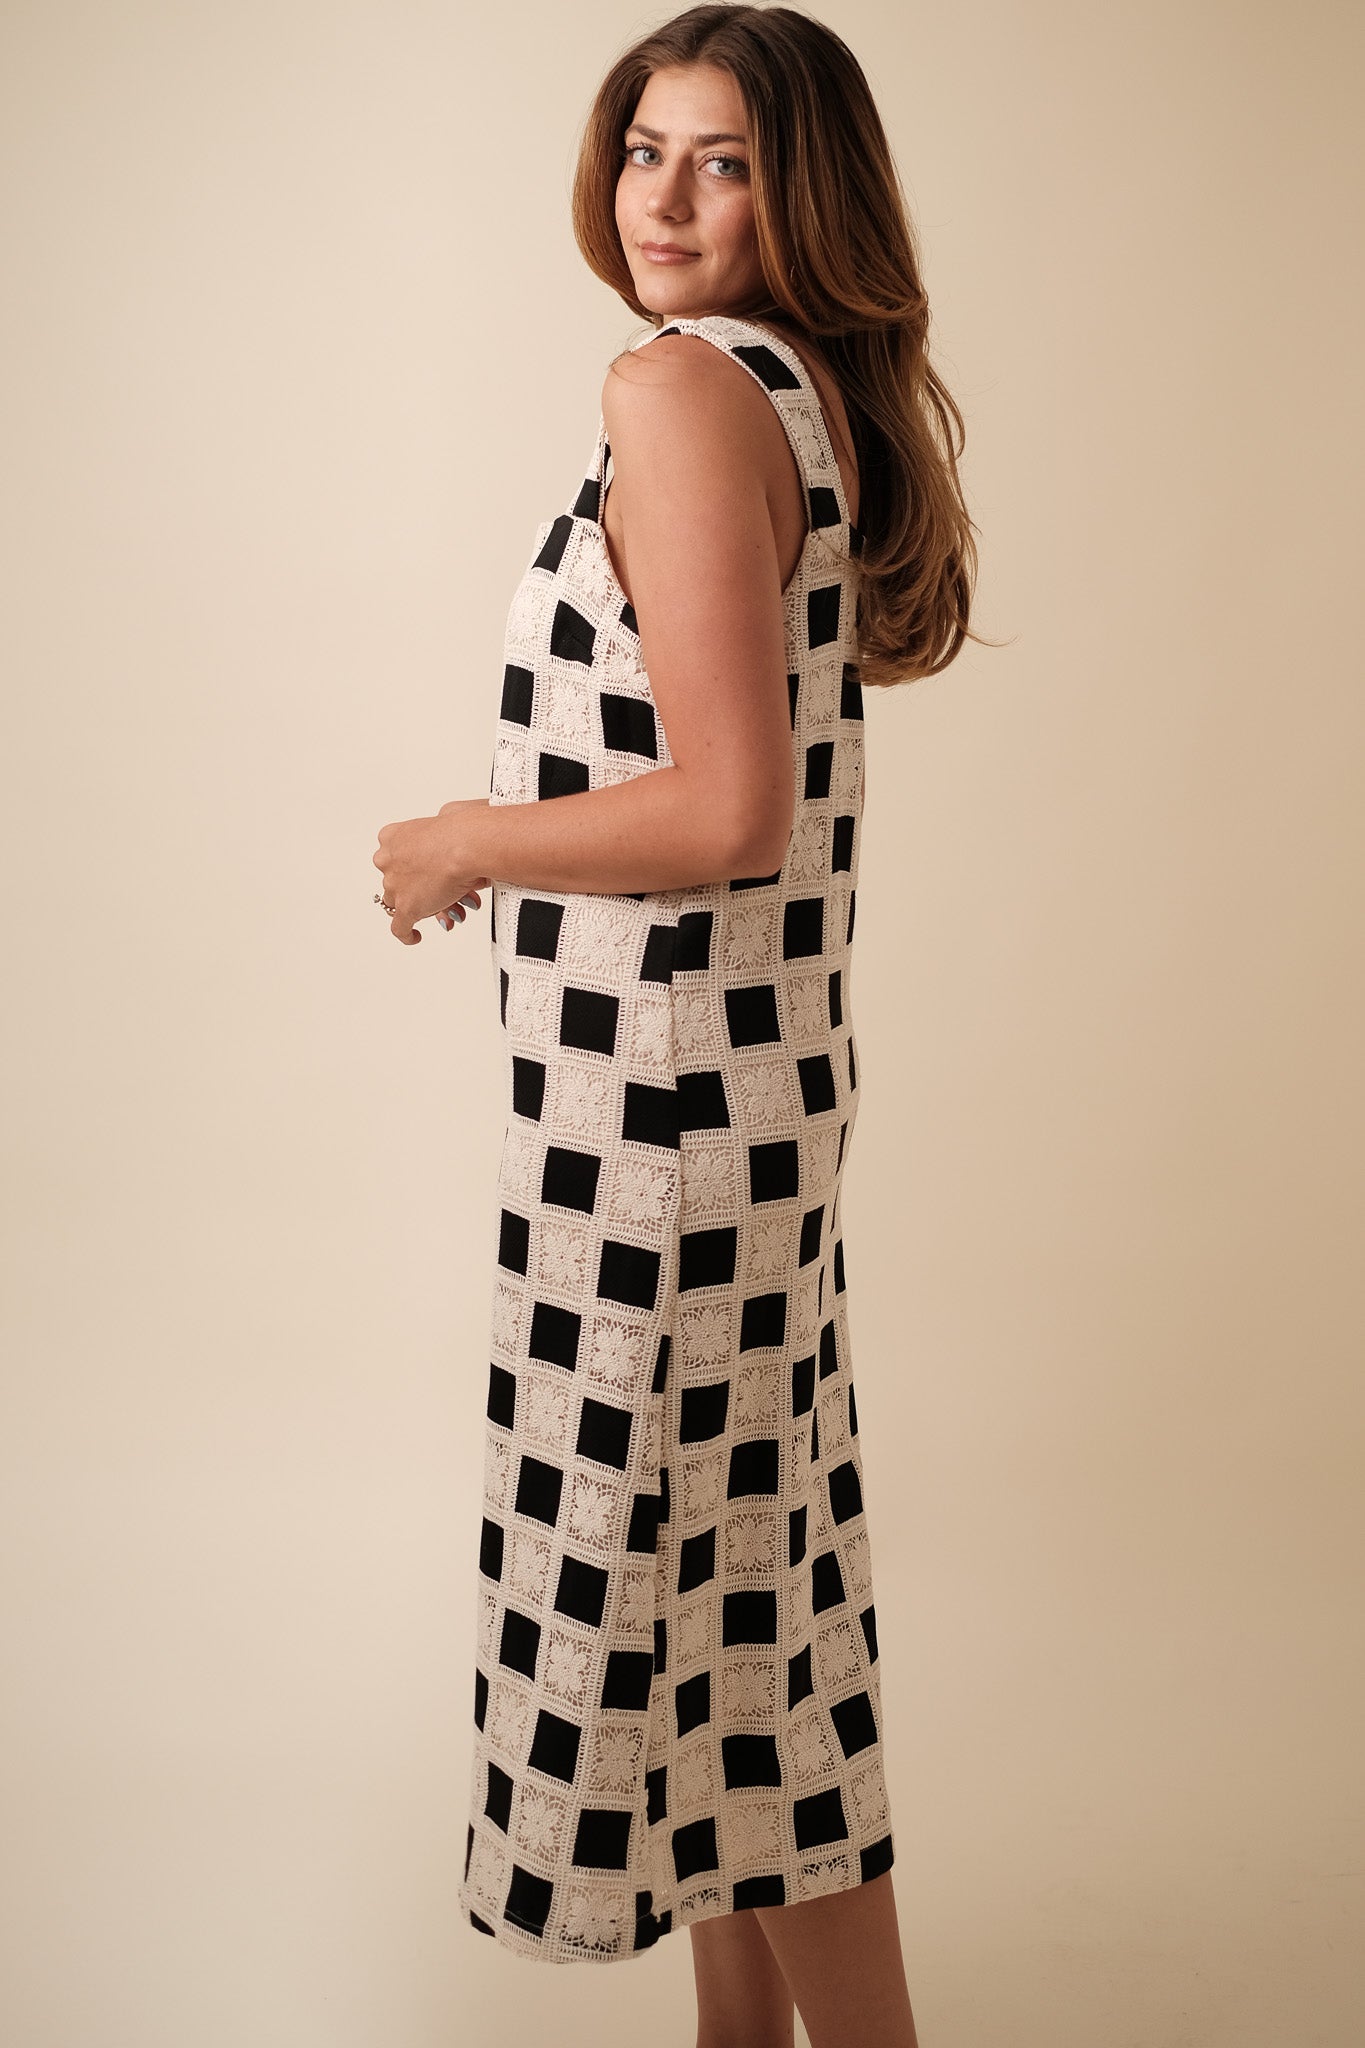 Aureum Mia Crochet Checkered Tank Midi Dress (Black)